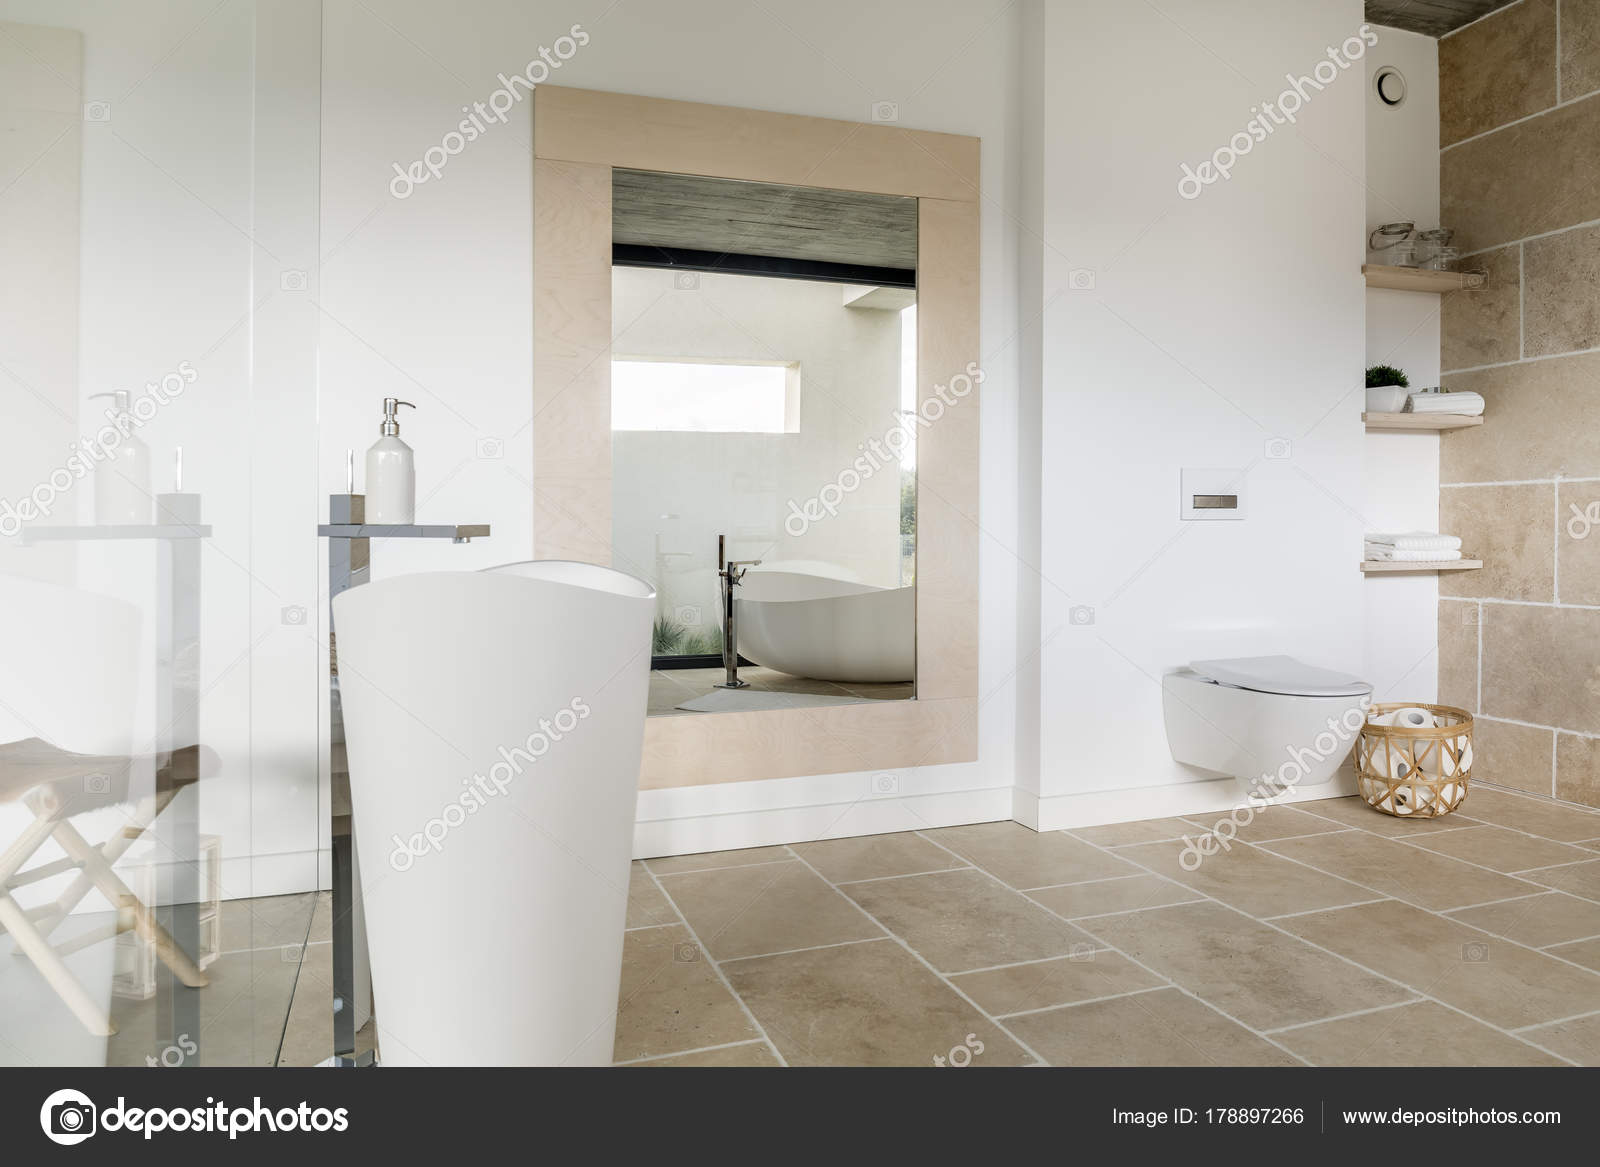 Großer Spiegel im modernen Badezimmer - Stockfotografie: lizenzfreie